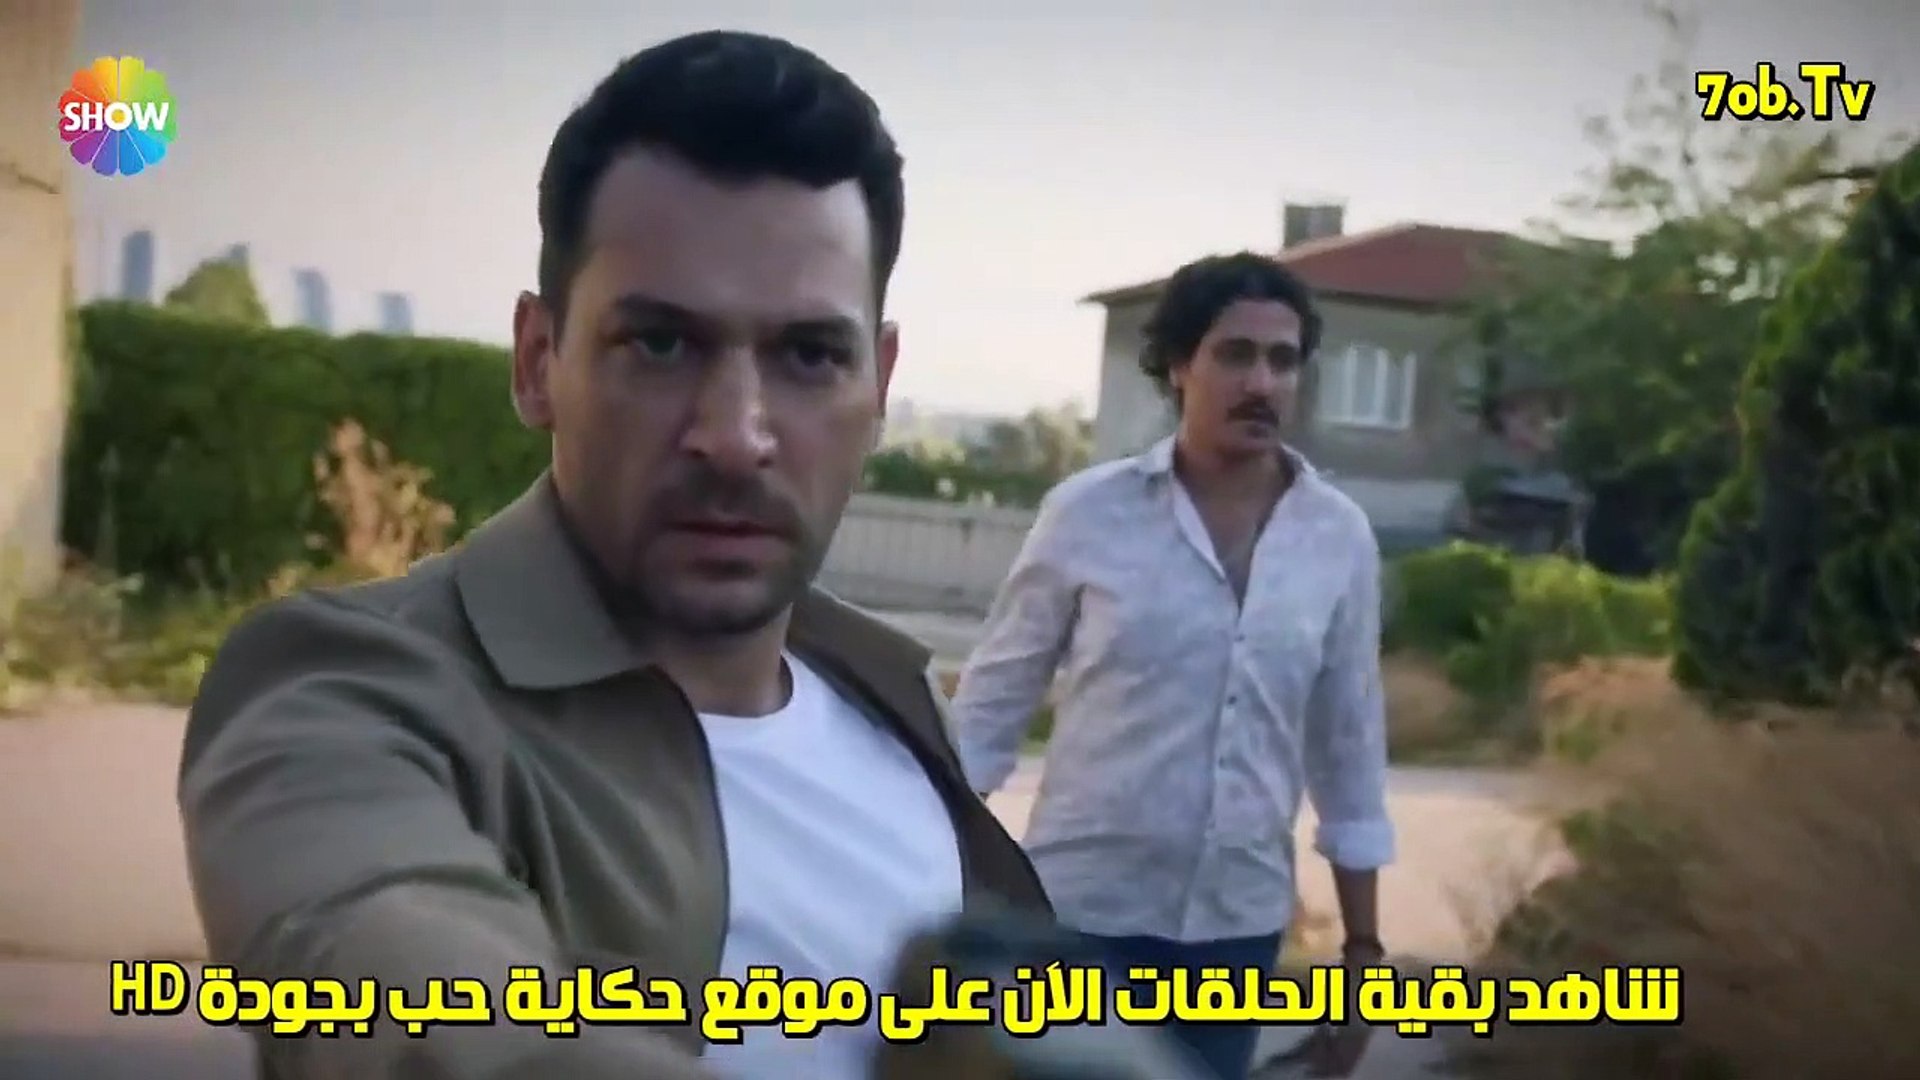 مسلسل رامو الحلقة 13 القسم 3 مترجم للعربية - فيديو Dailymotion